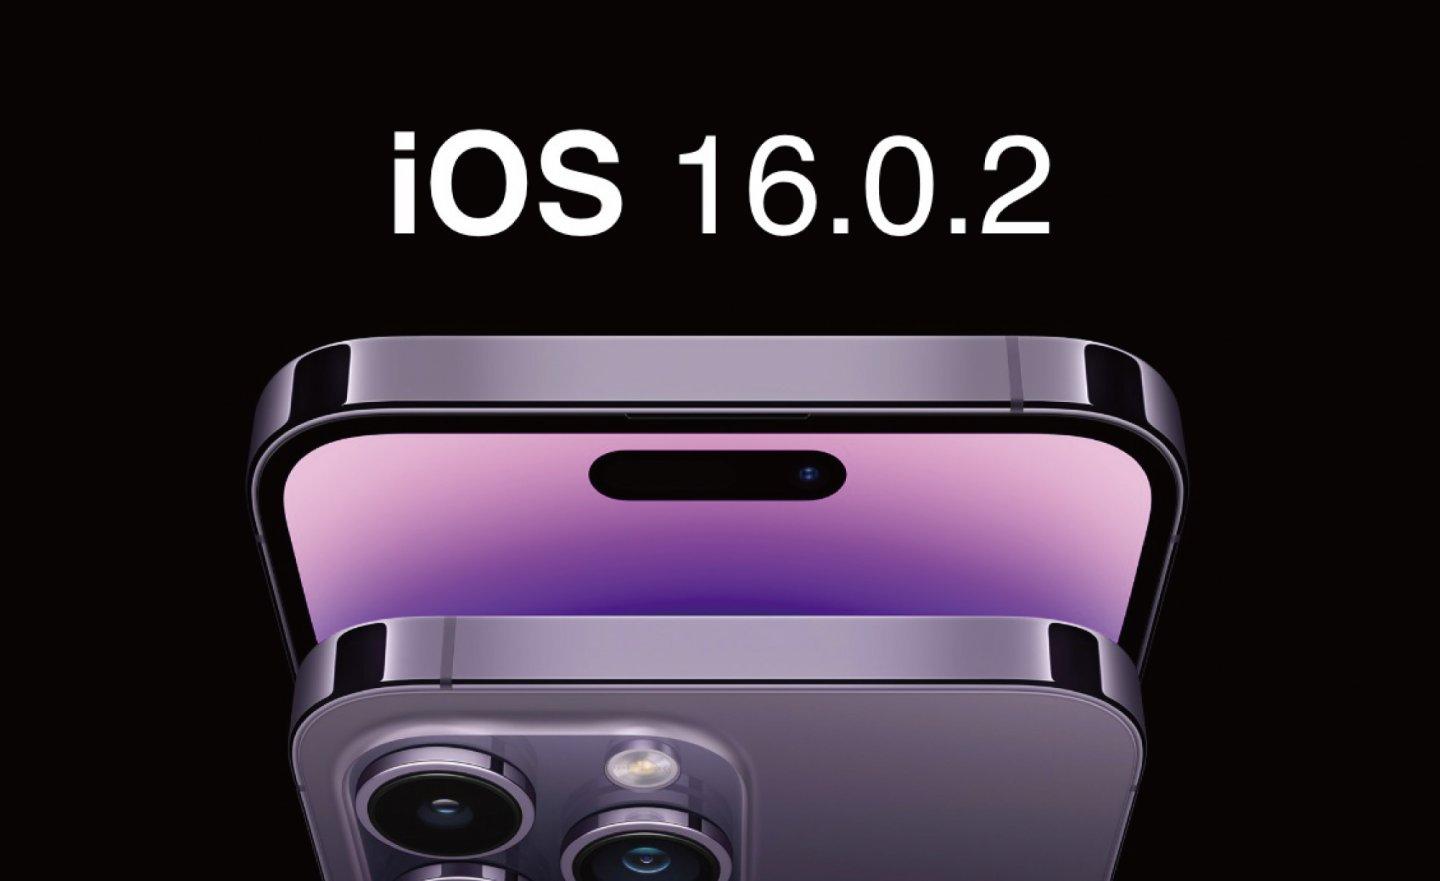 Apple 釋出 iOS 16.0.2 更新，修復相機震動、複製/貼上及觸控輸入沒反應等問題